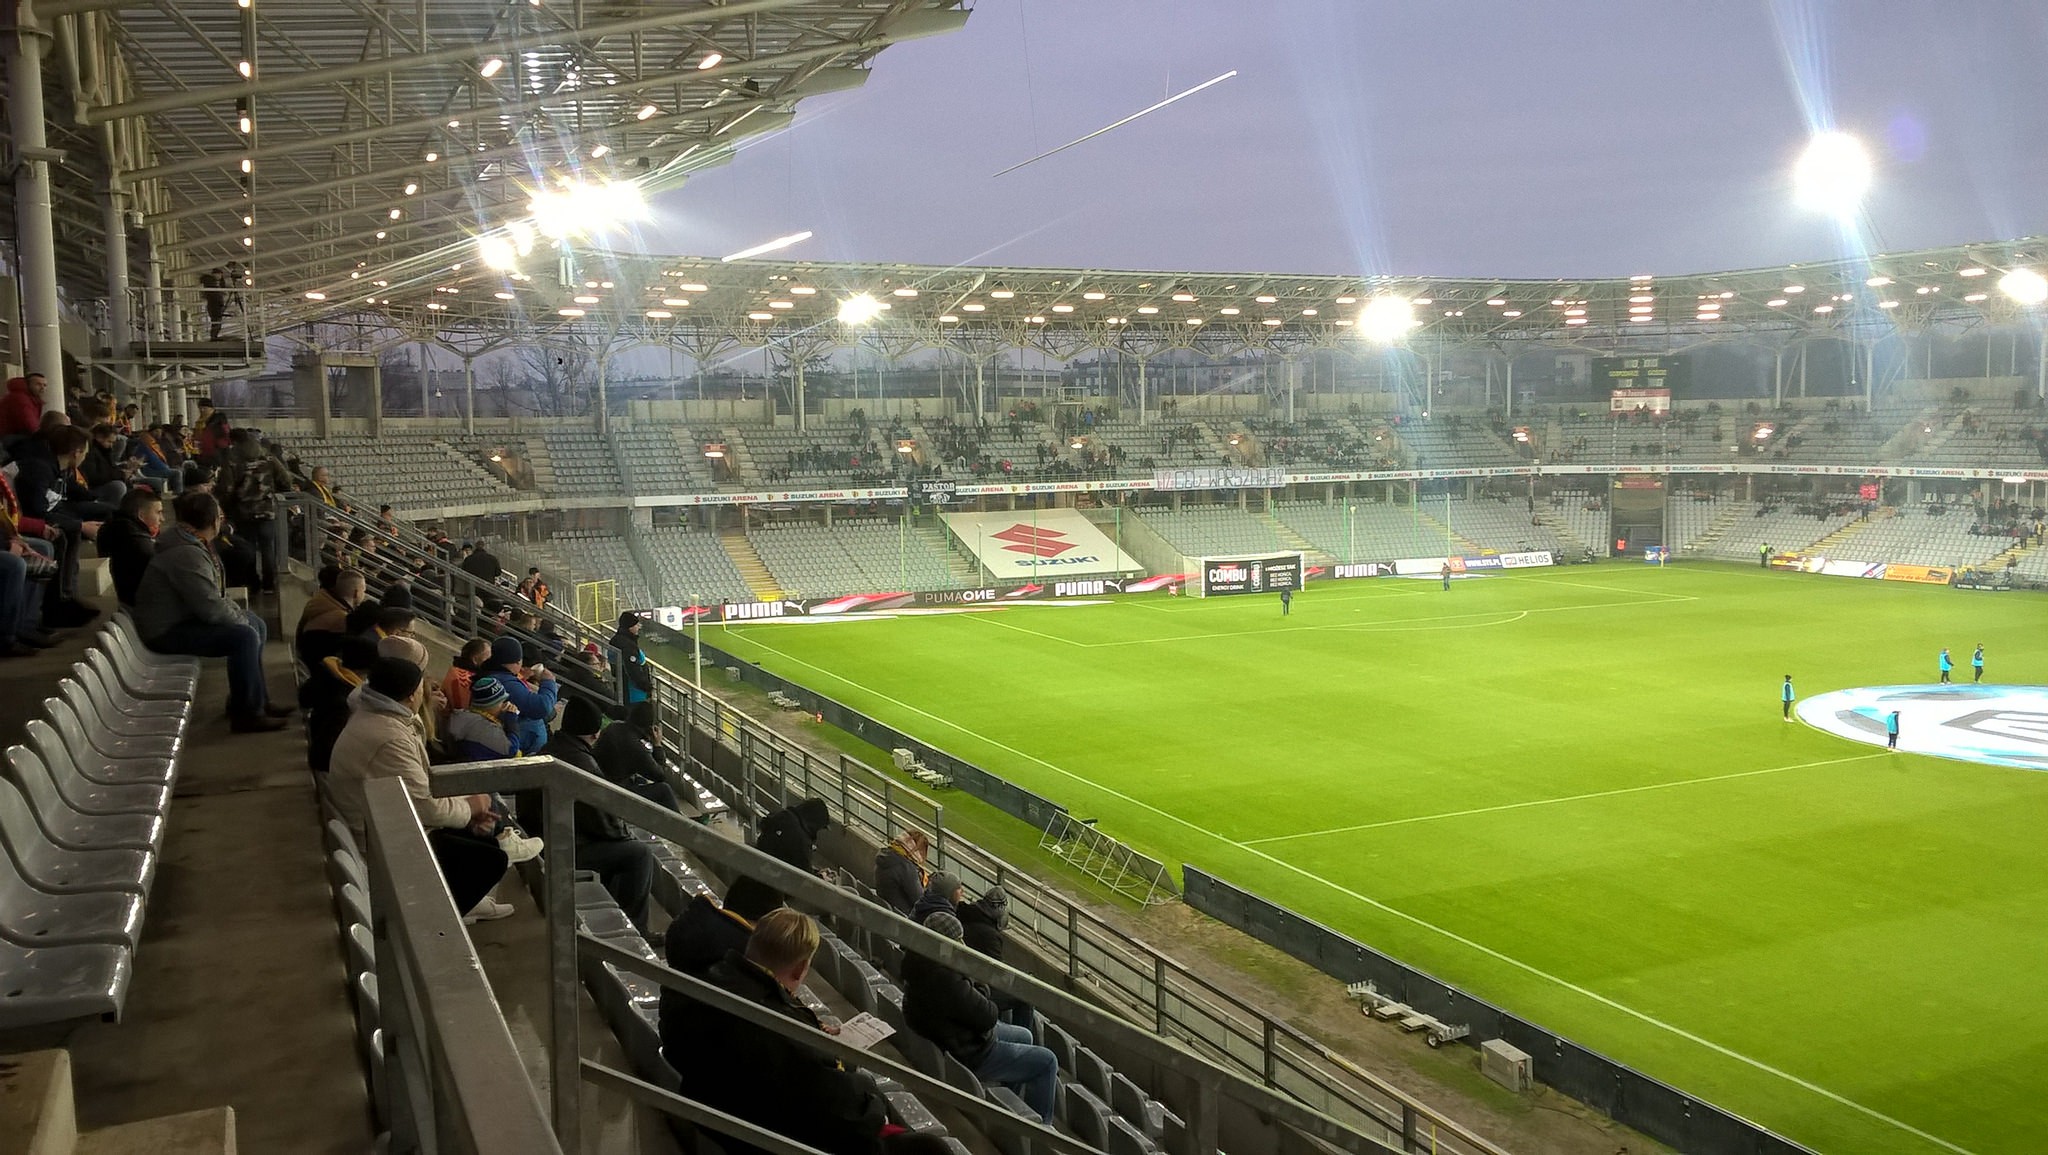 Suzuki Arena (Stadion Miejski Arena Kielc)